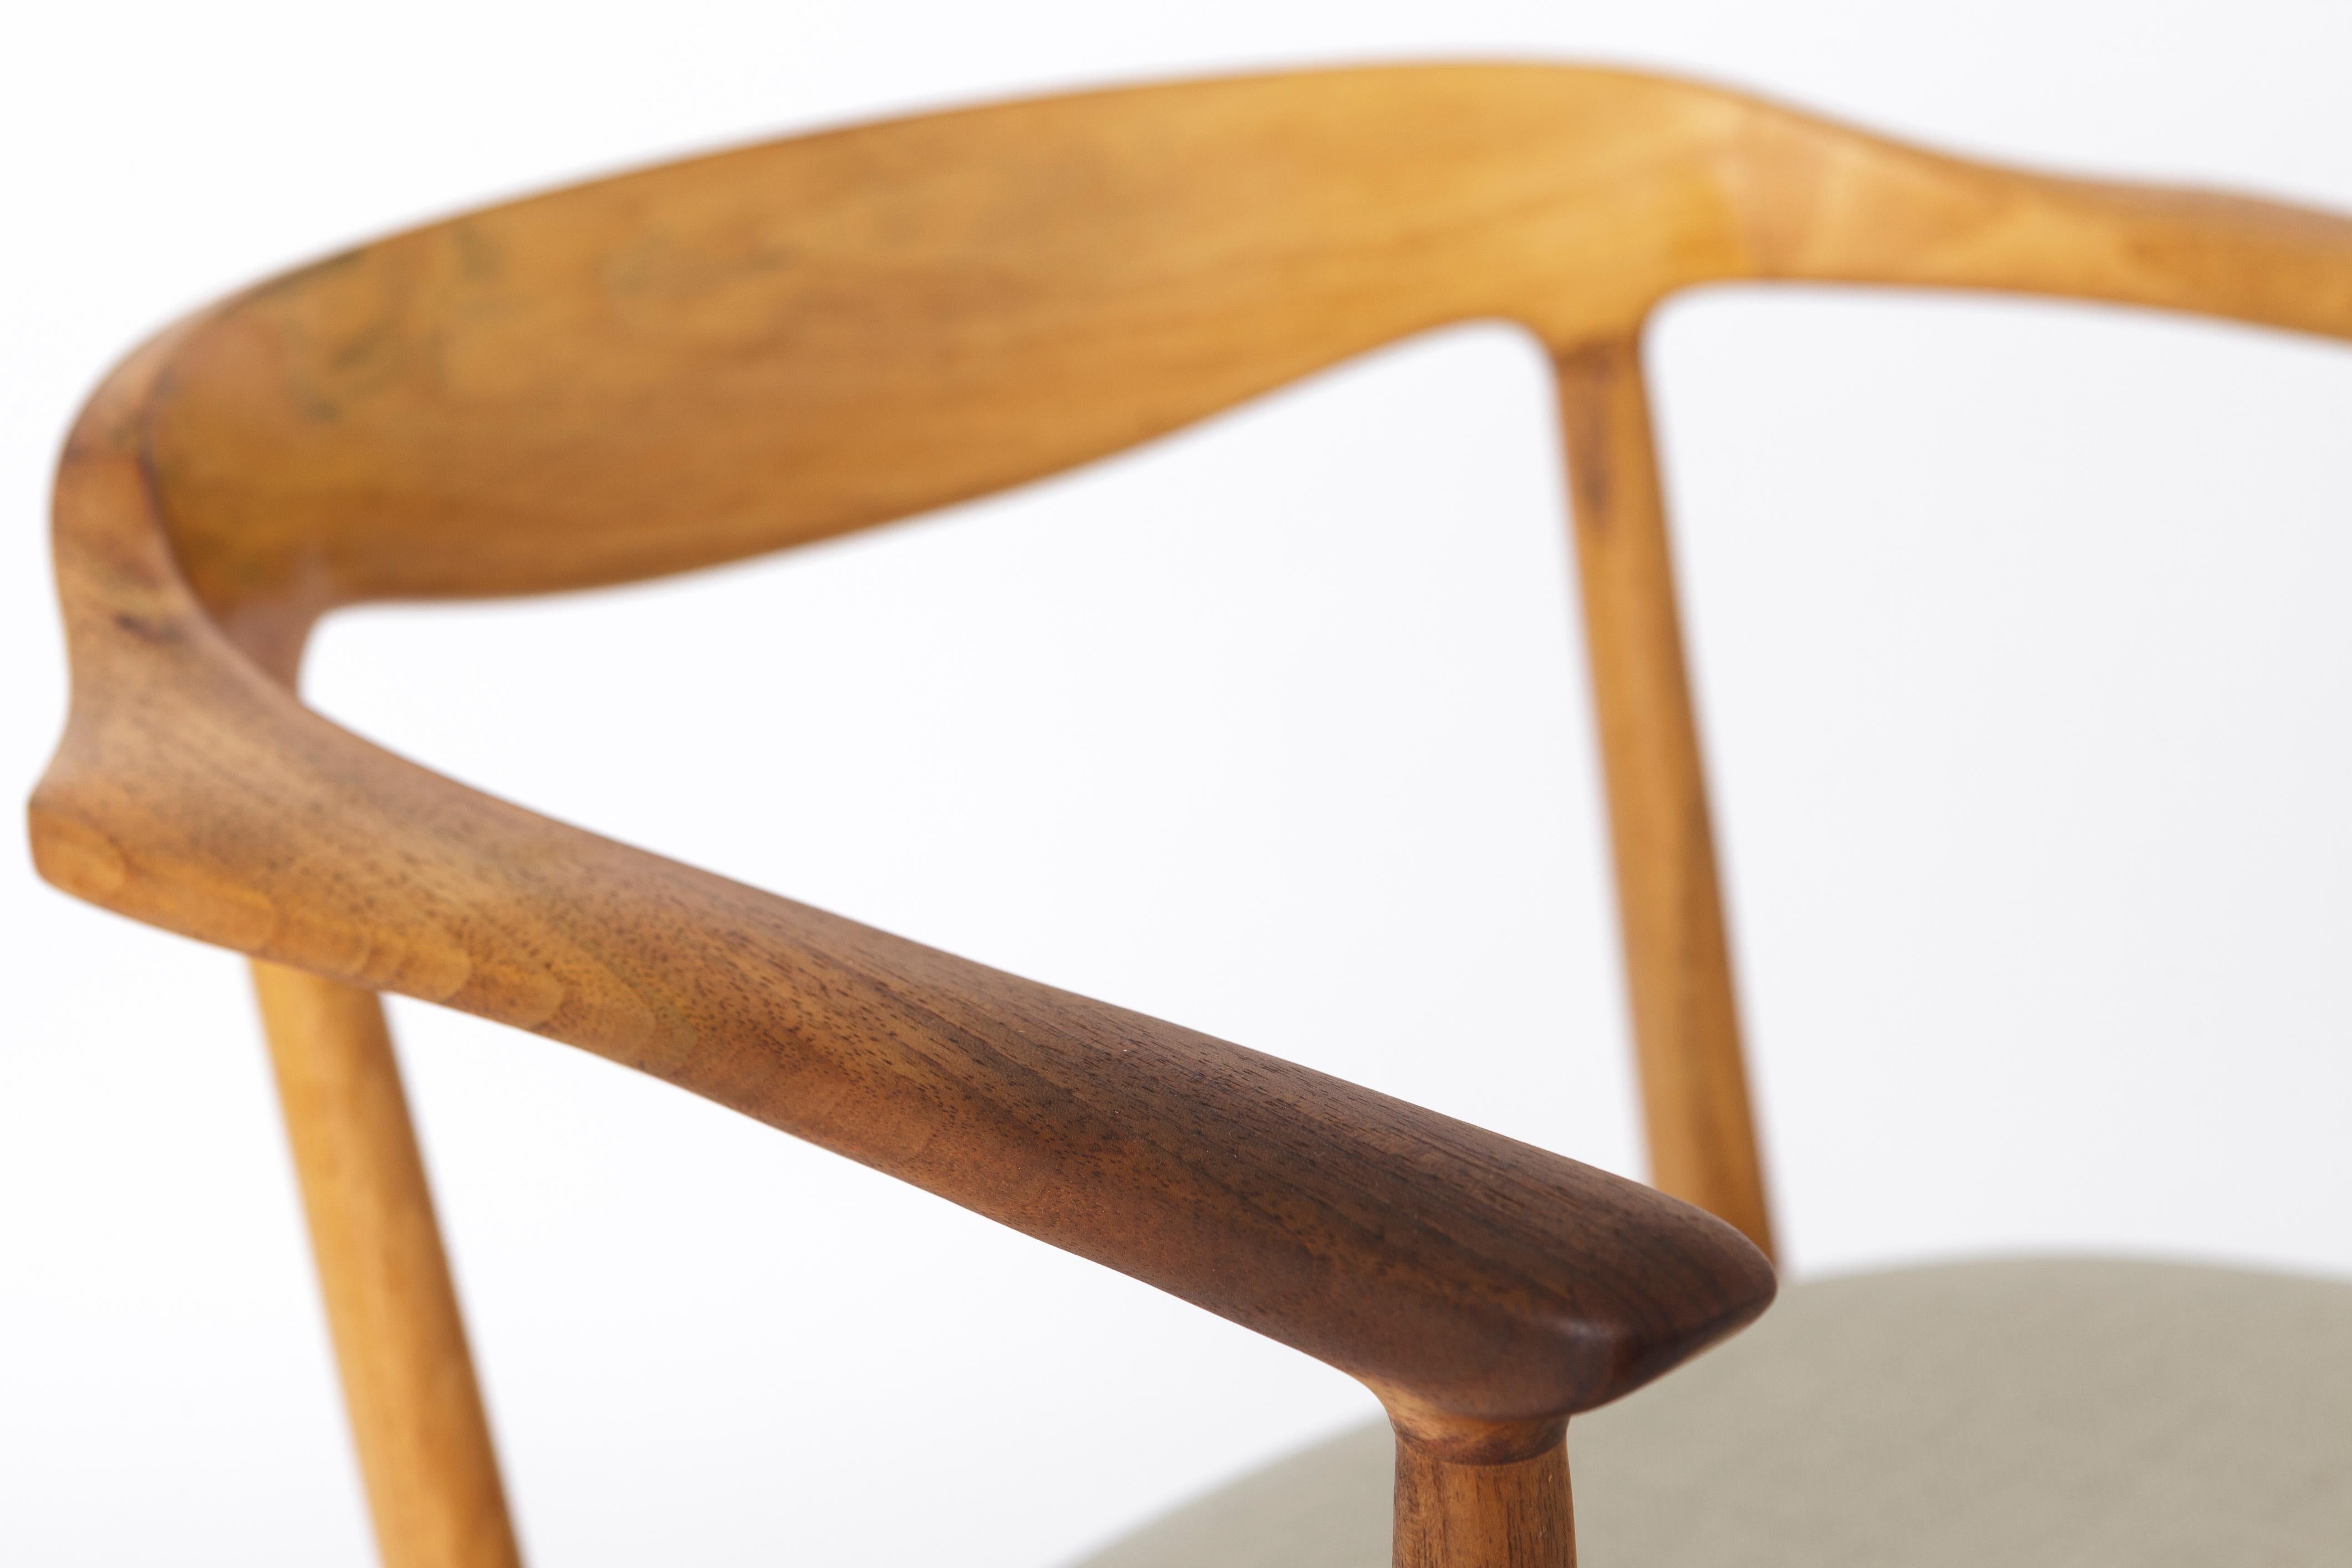 Vintage-Sessel aus Nussbaumholz, 1960er-1970er Jahre (Poliert)